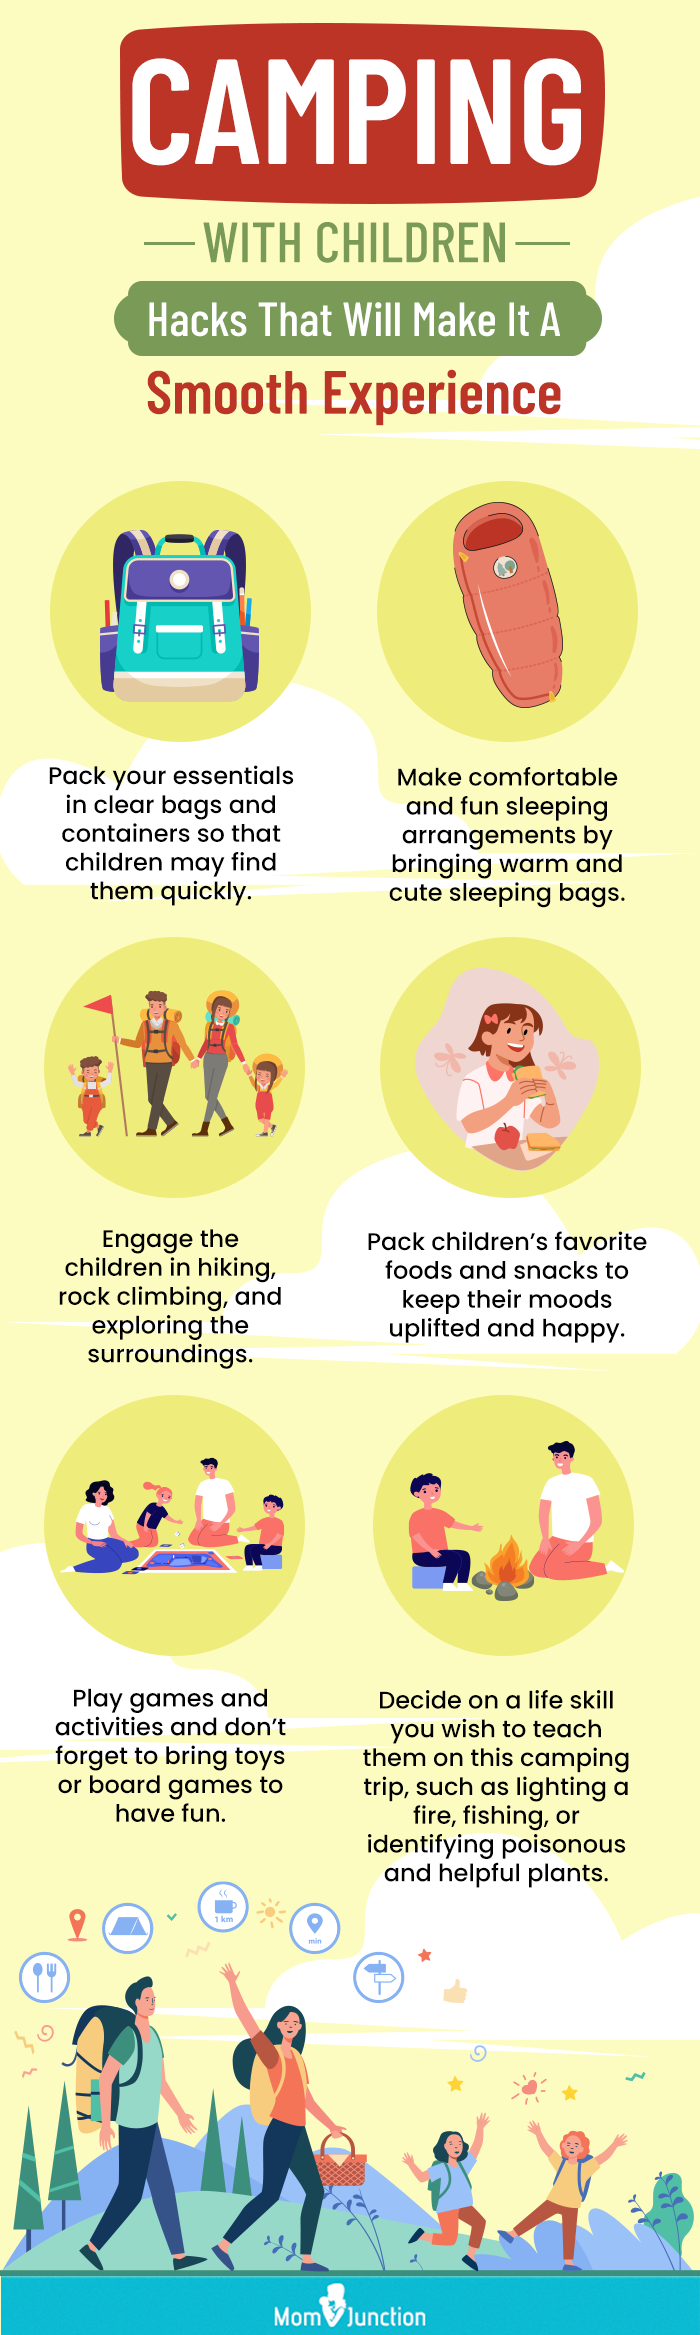 与孩子一起露营的技巧将使你的体验更加顺利(信息图)